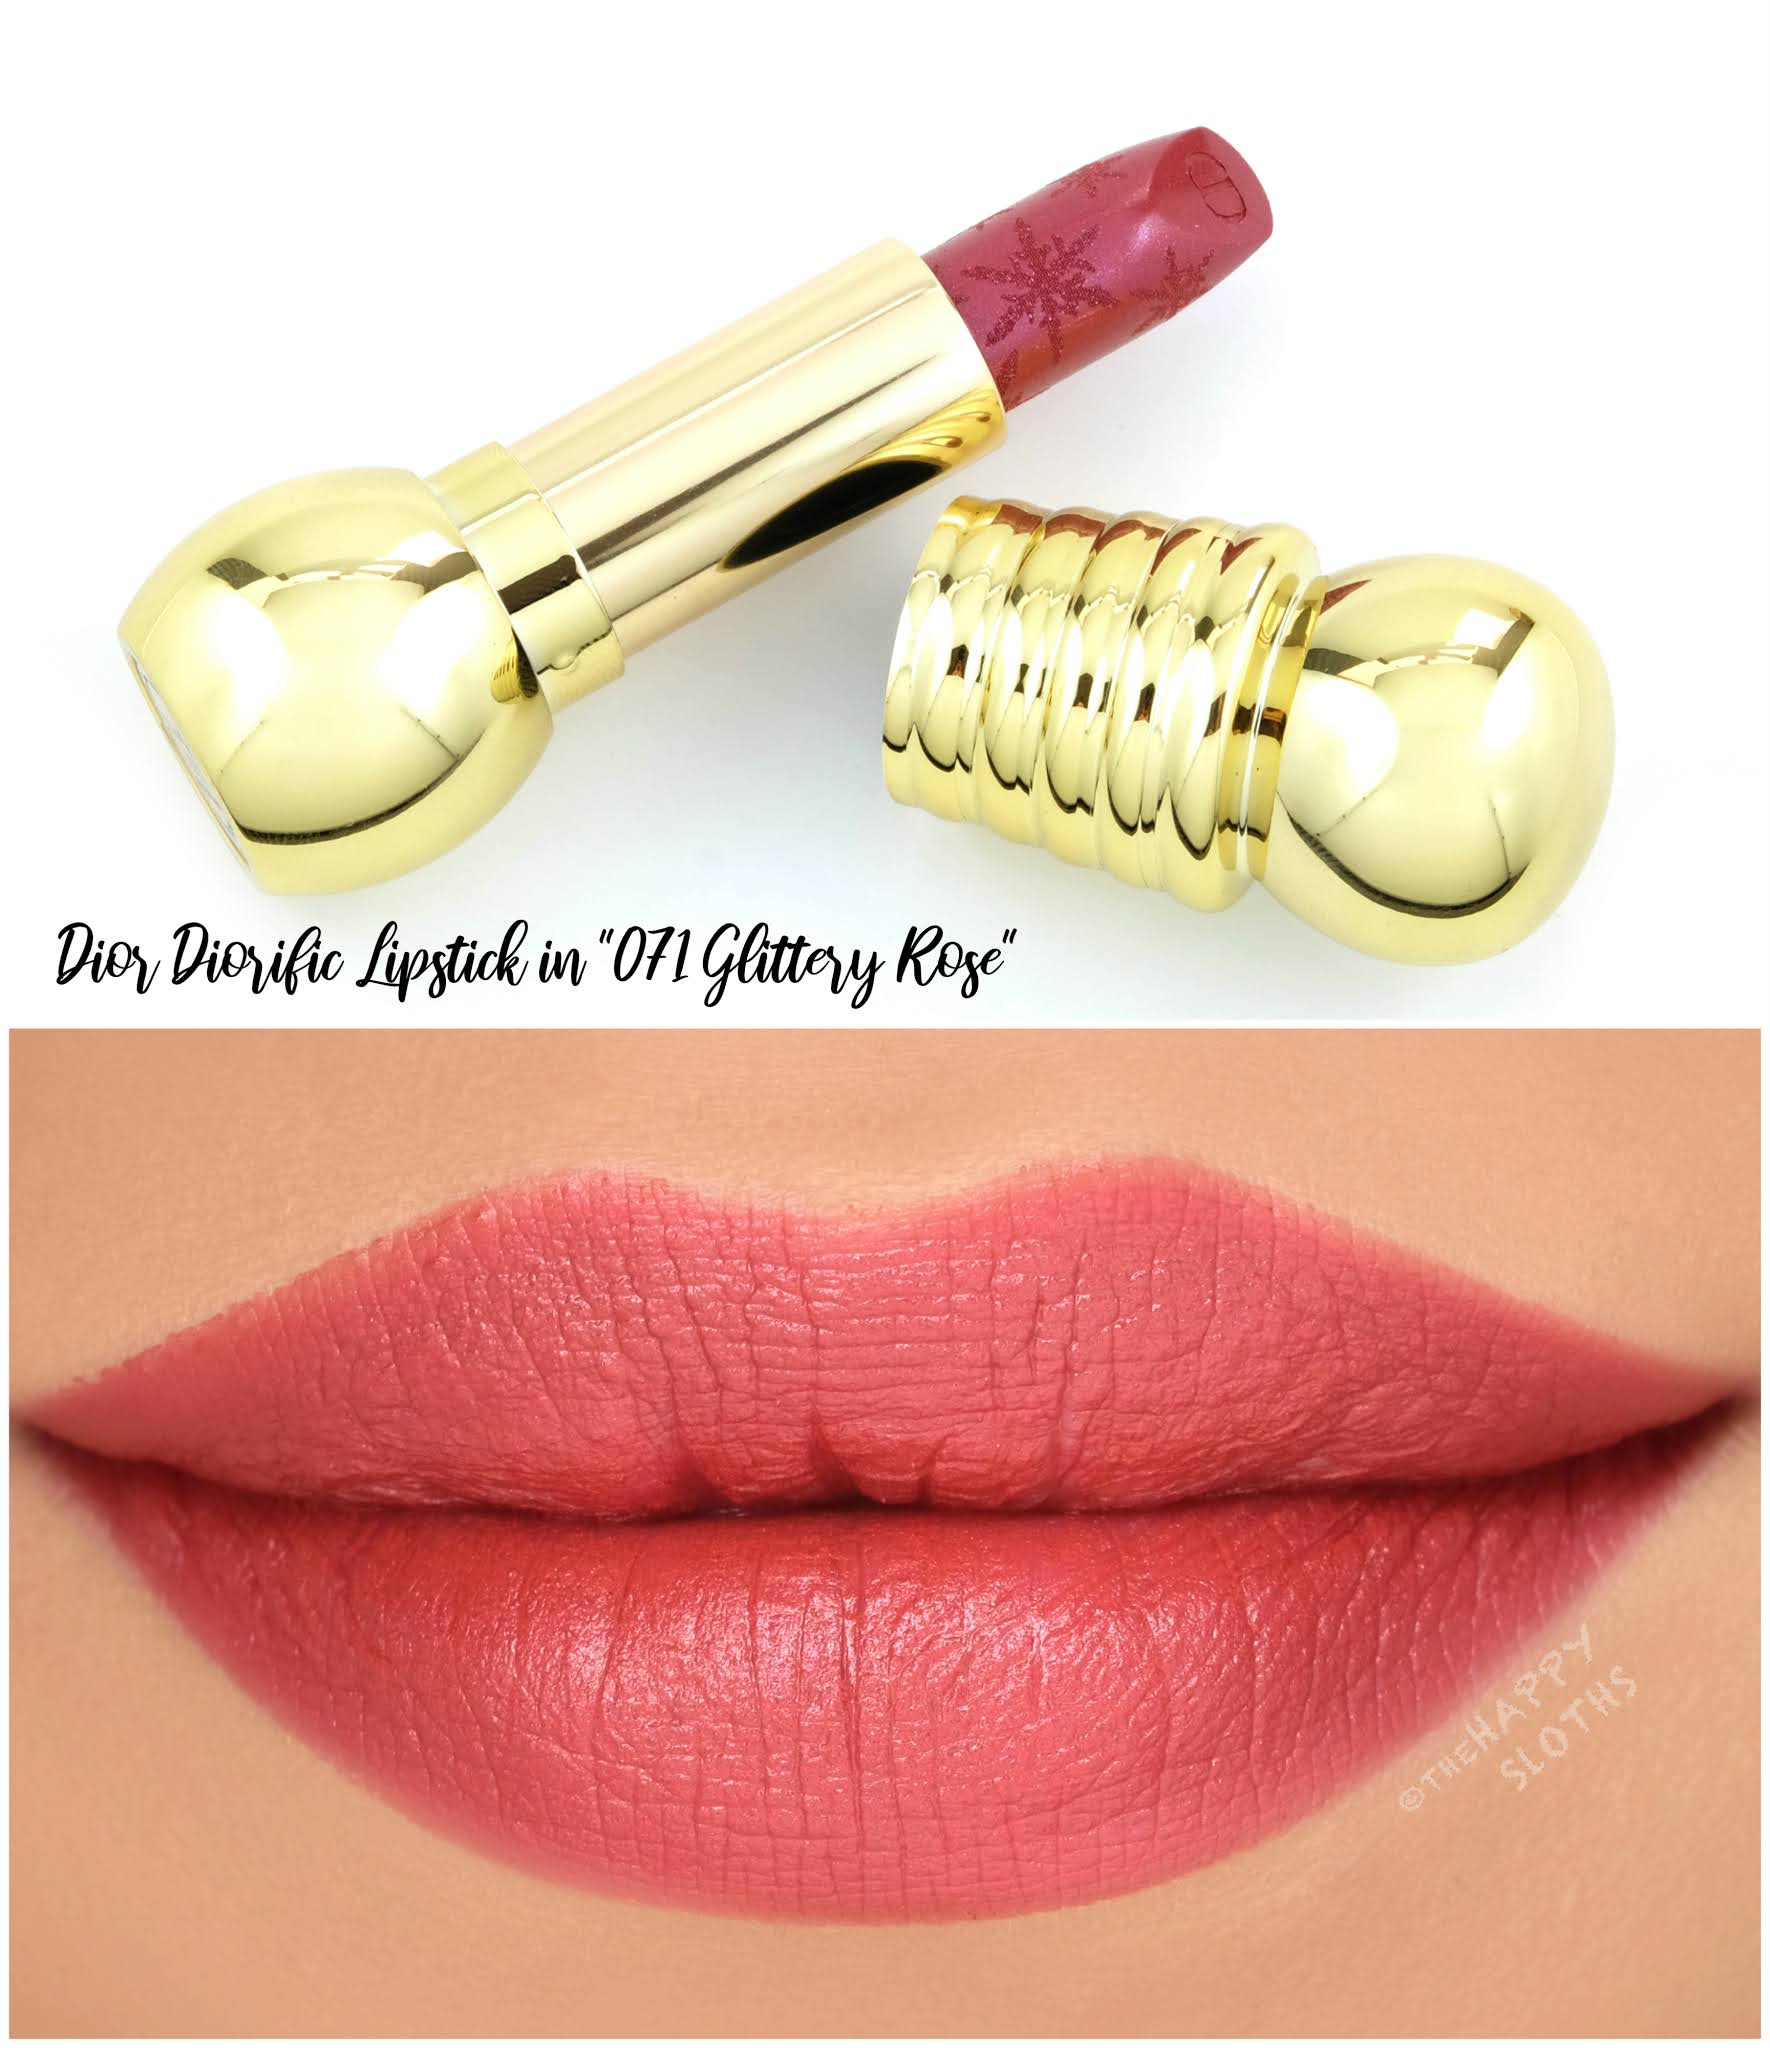 diorific lipstick